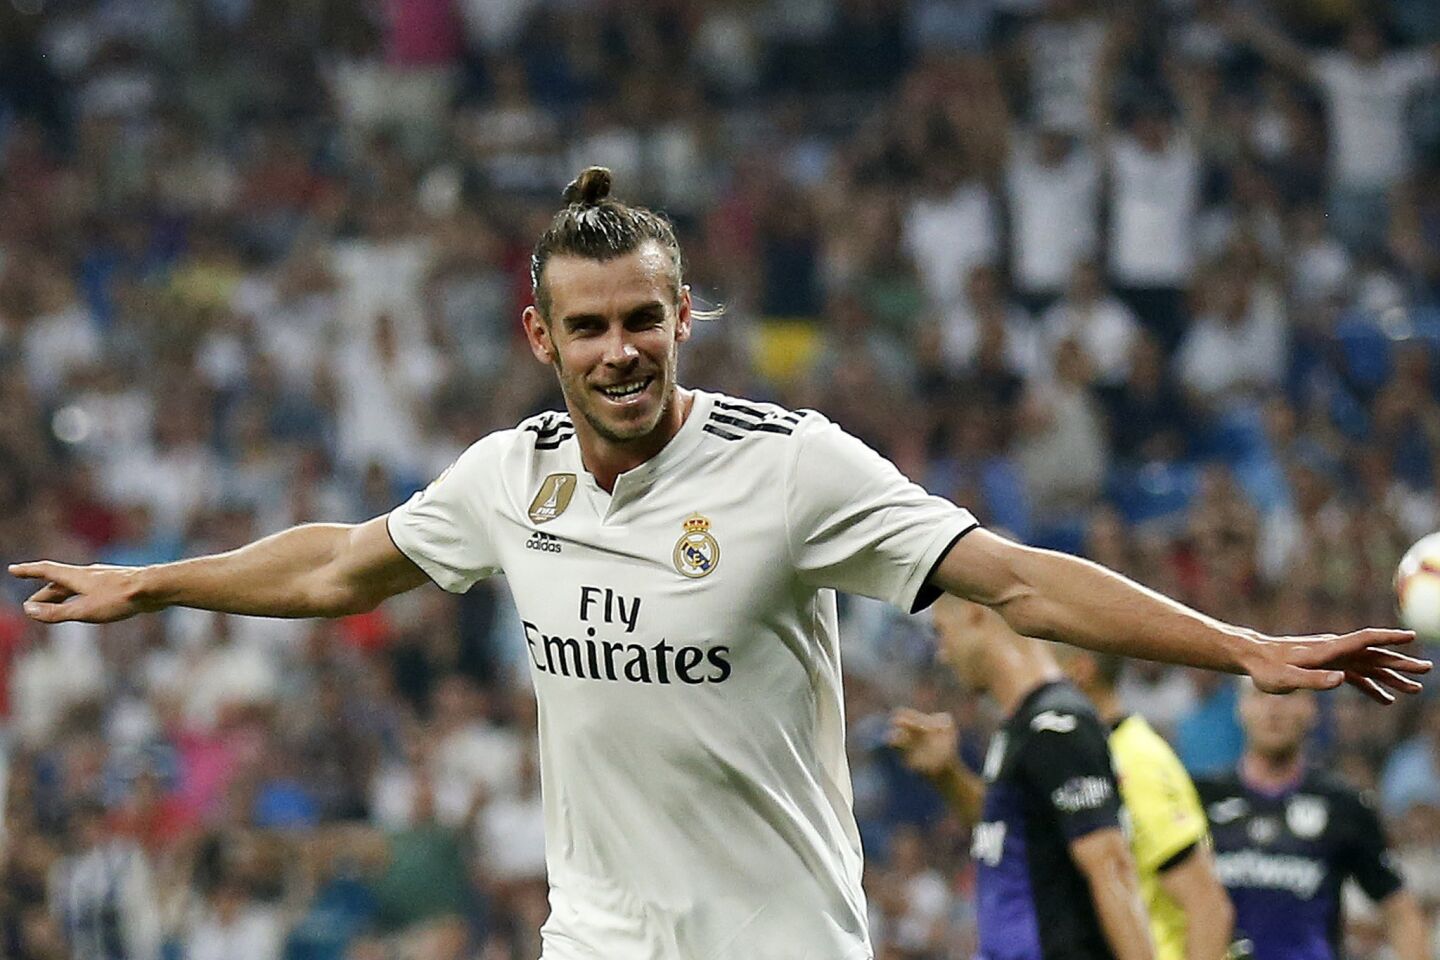 Gareth Bale del Real Madrid tras marcar el primer gol del equipo en el partido ante Leganés en la Liga española, el sábado 1 de septiembre de 2018. (AP Foto/Andrea Comas) ** Usable by HOY, ELSENT and SD Only **